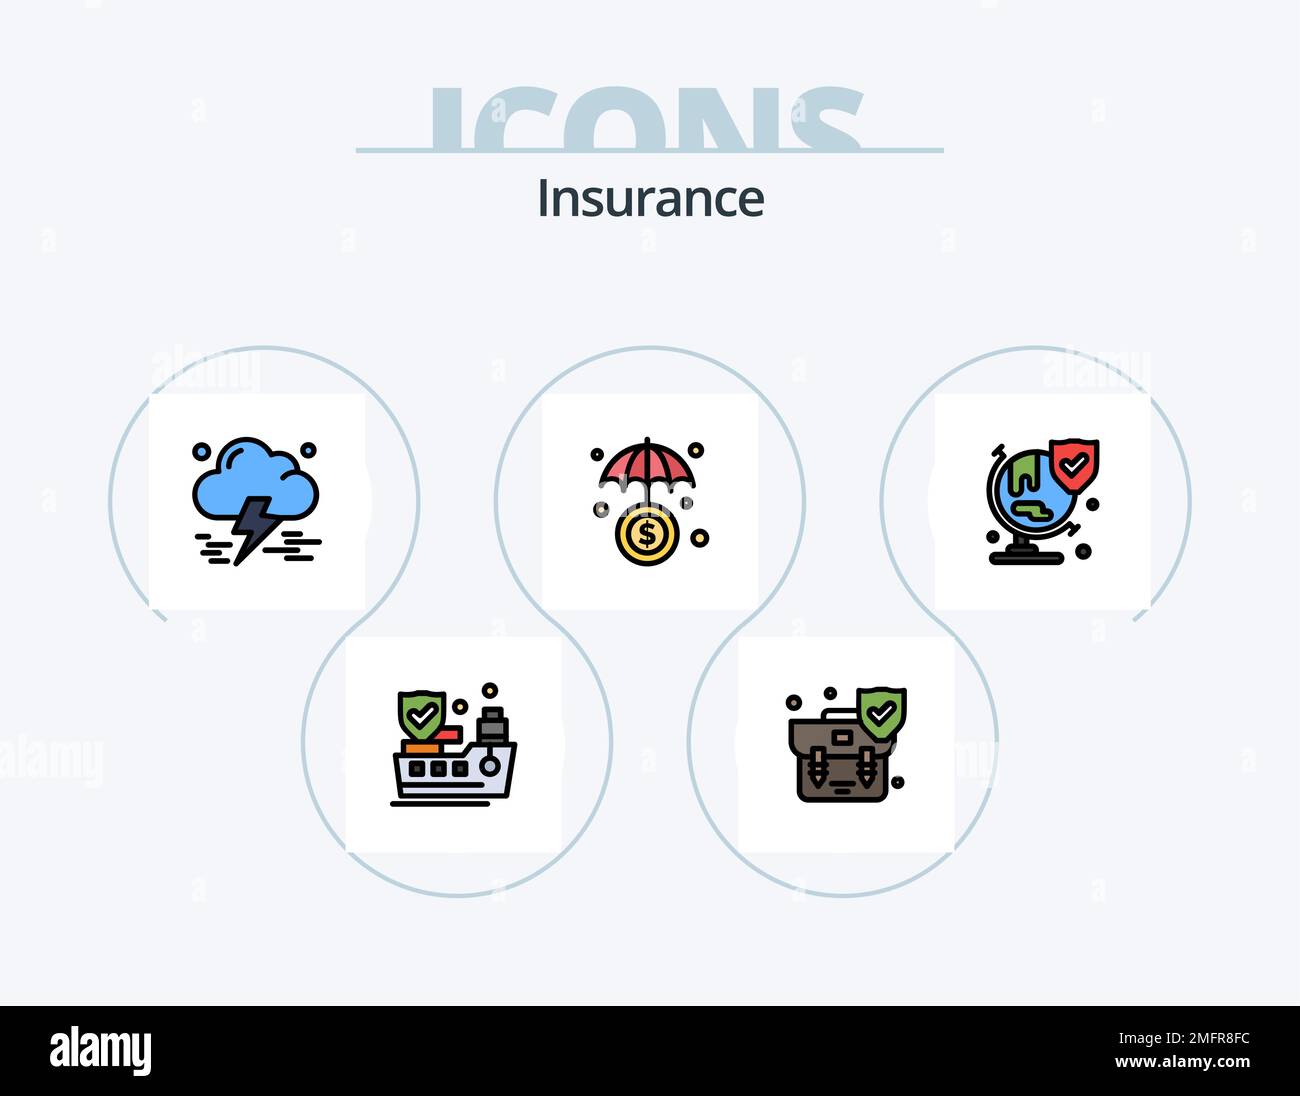 Línea de seguro llena Icon Pack 5 Icon Design. seguro. bloqueo. mantenga pulsado. accidente. seguro Ilustración del Vector